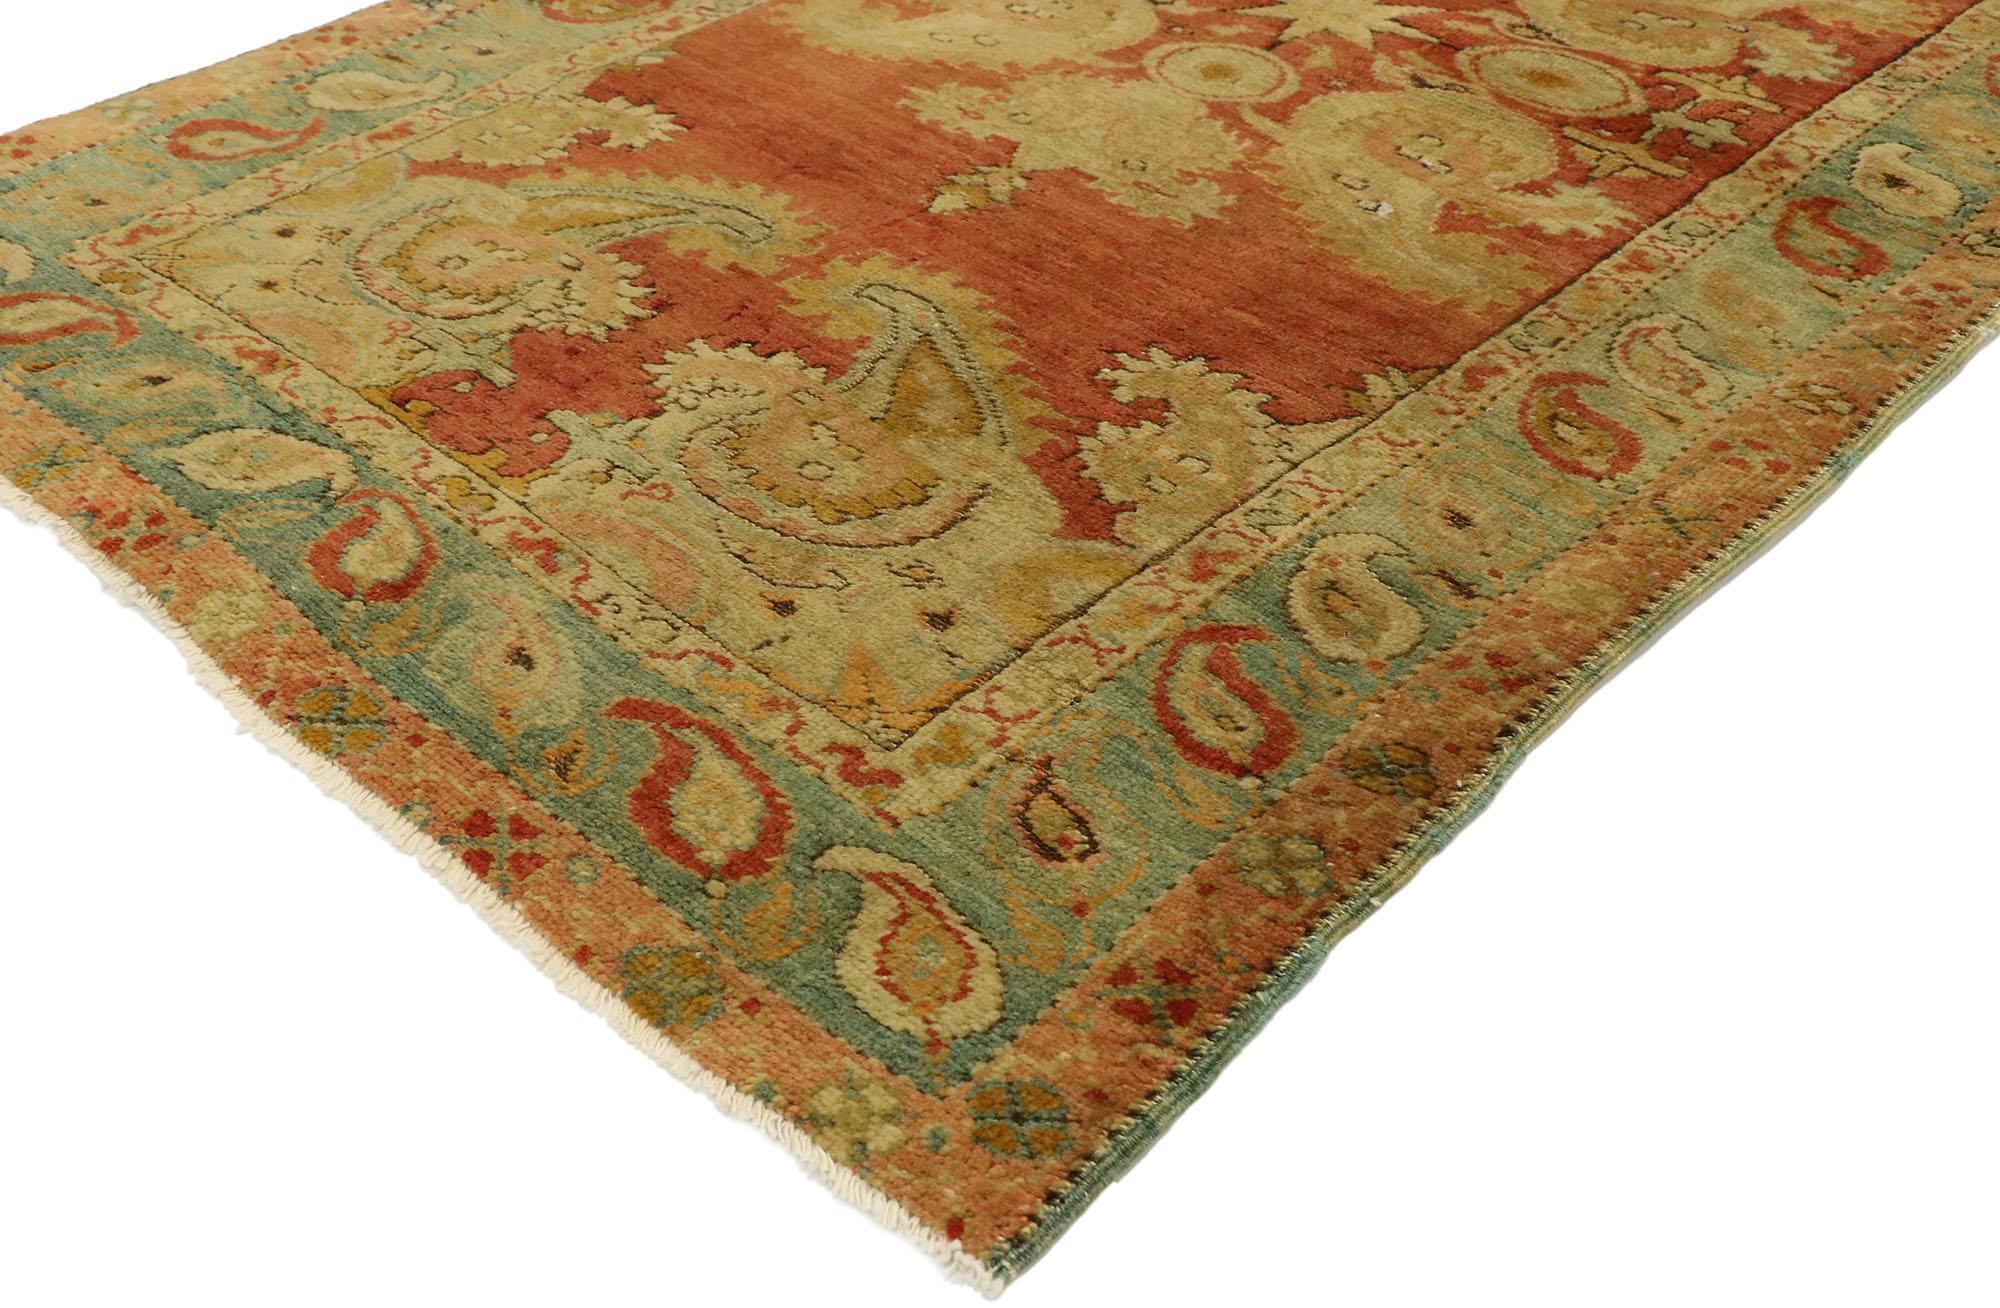 51395, tapis d'accentuation turc Oushak vintage avec motif Boteh sur toute la surface. Ce tapis turc Oushak en laine nouée à la main présente un champ de couleurs rouge et orange recouvert de botehs dansants, d'étoiles et de palmettes dans des tons